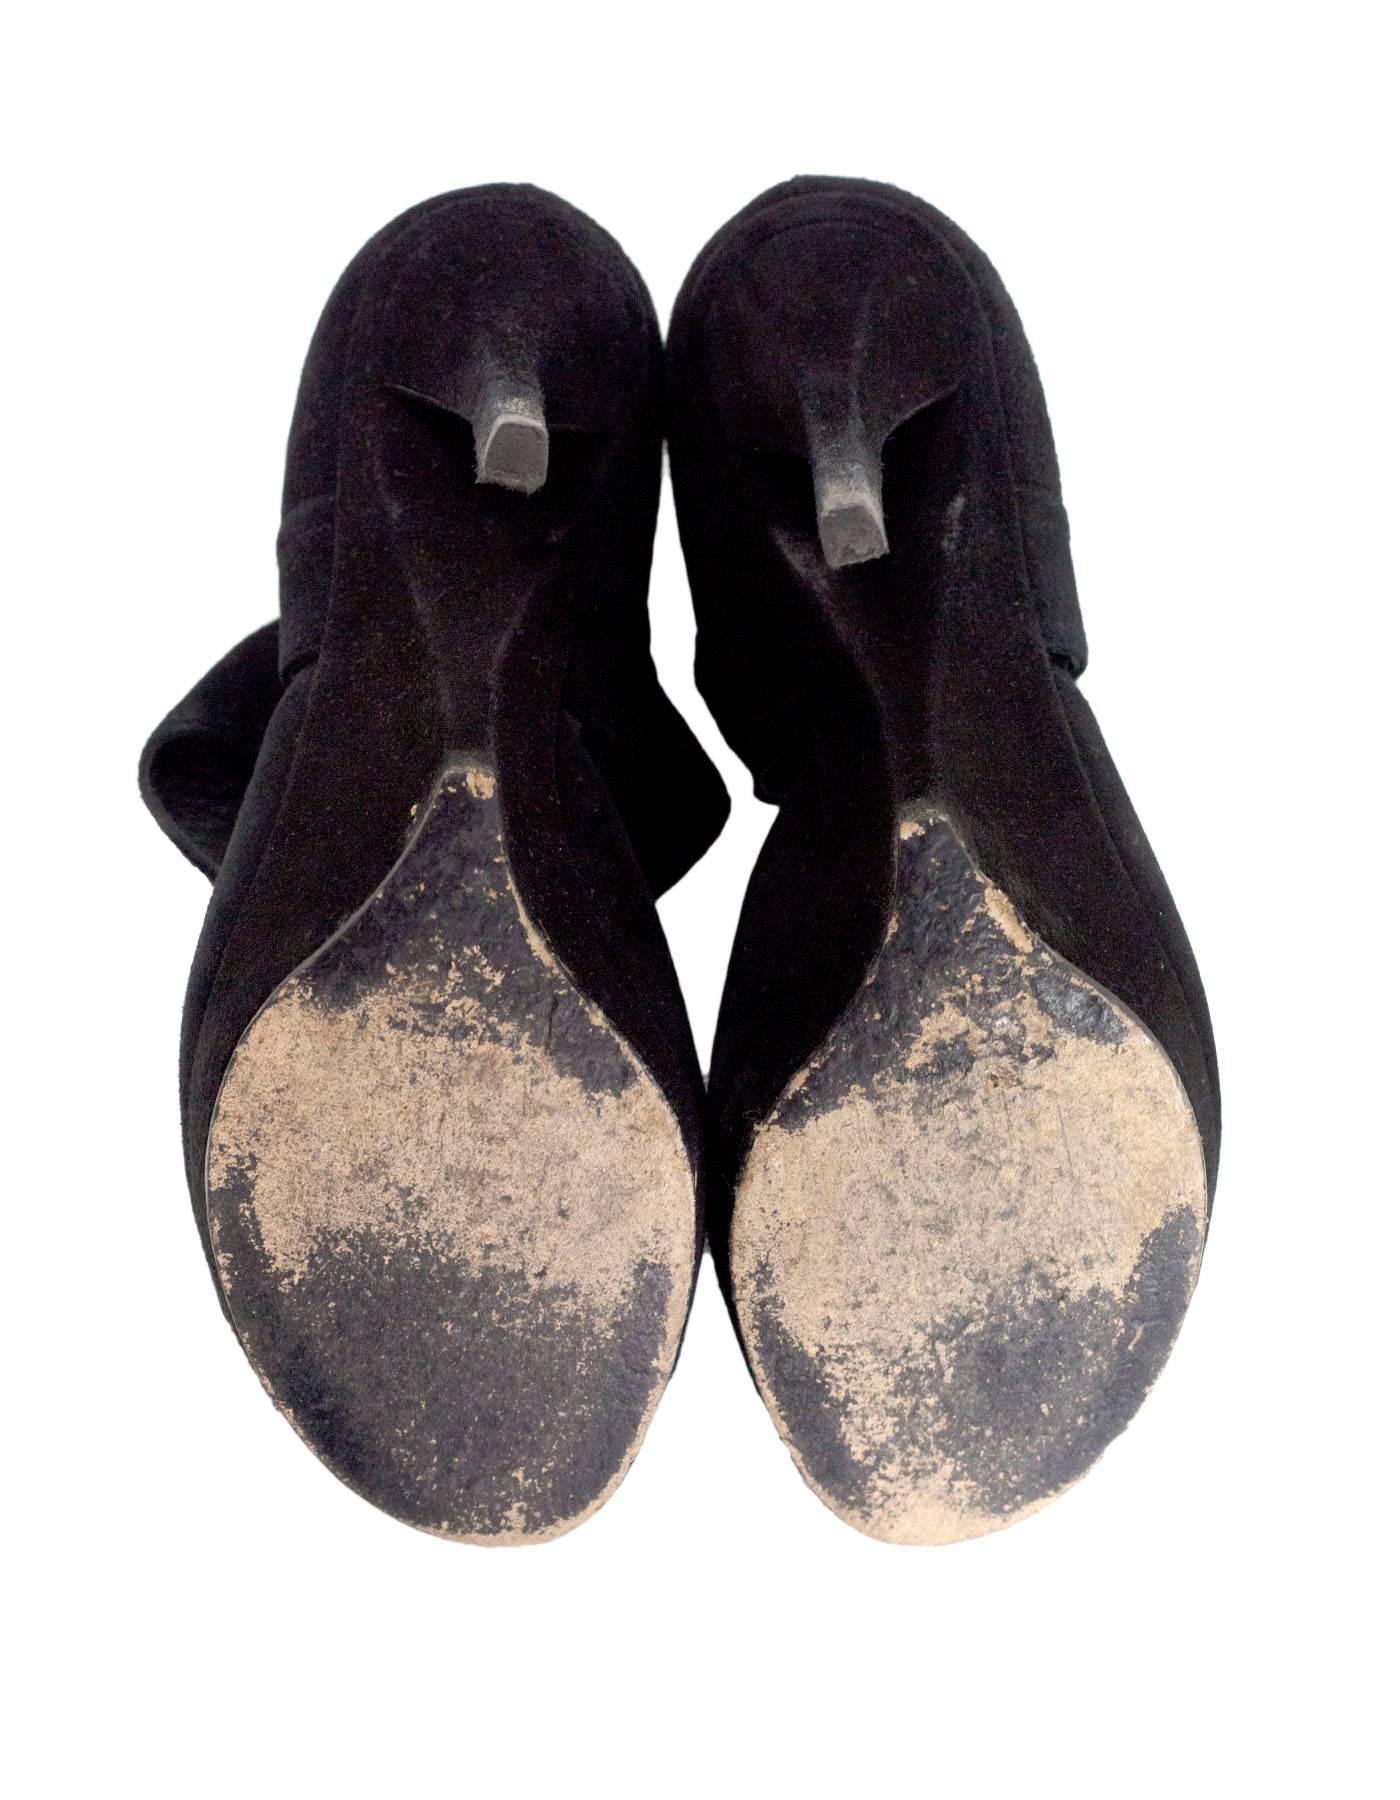 Yves Saint Laurent Black Suede Sandals Sz 35 3